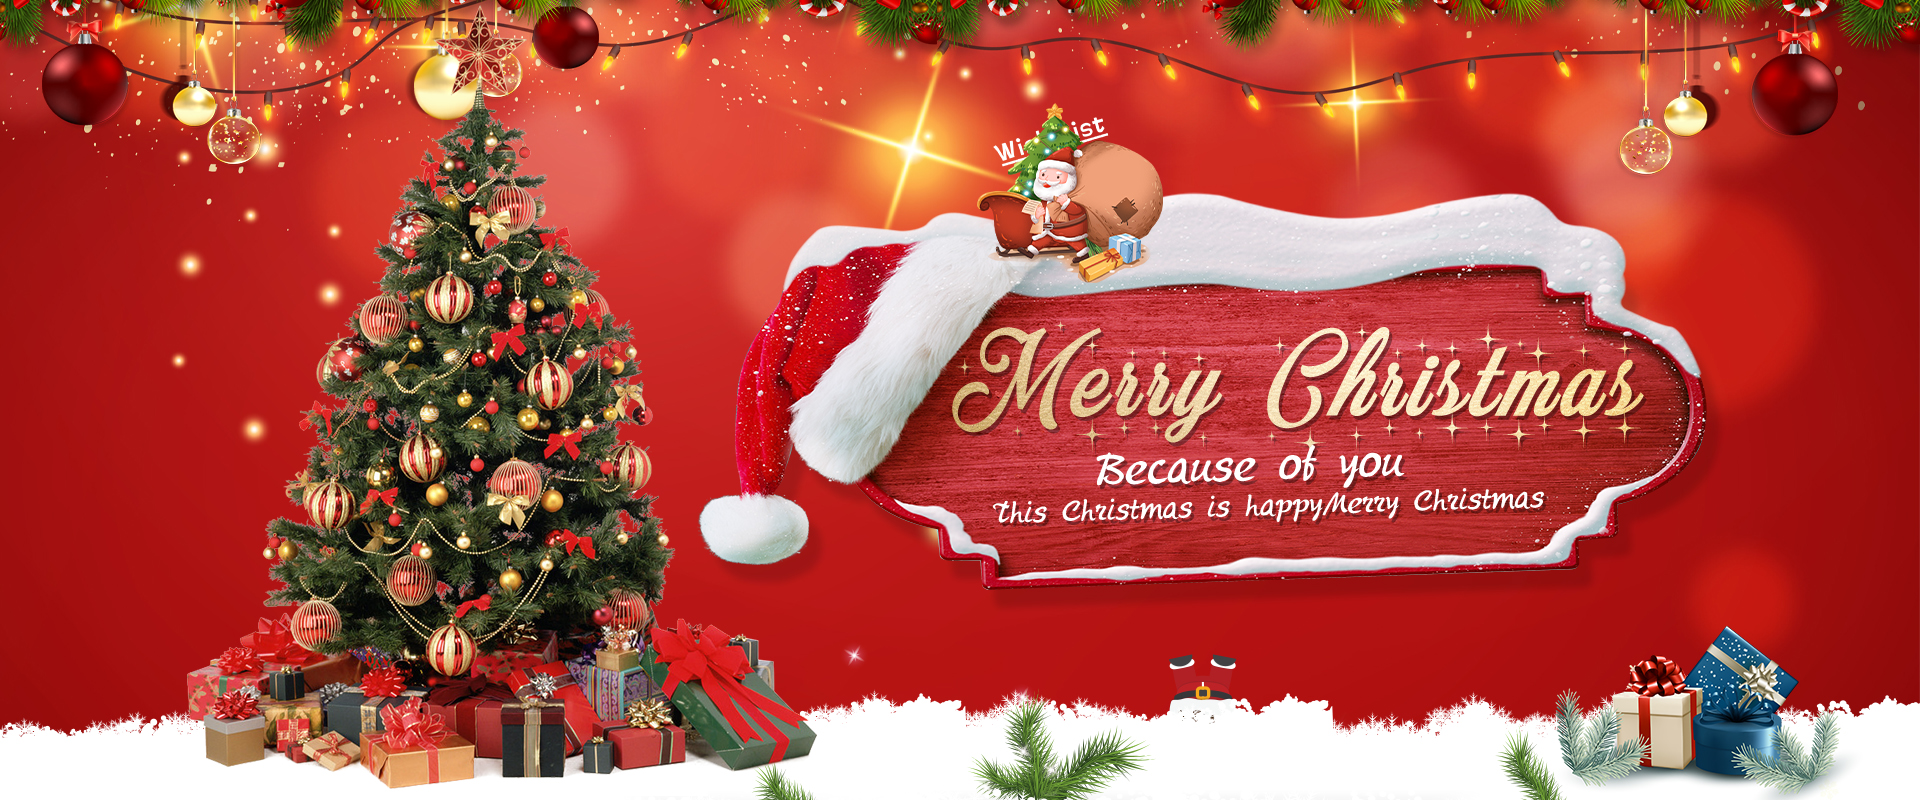 Guoyu factory wish you a merry christmas.